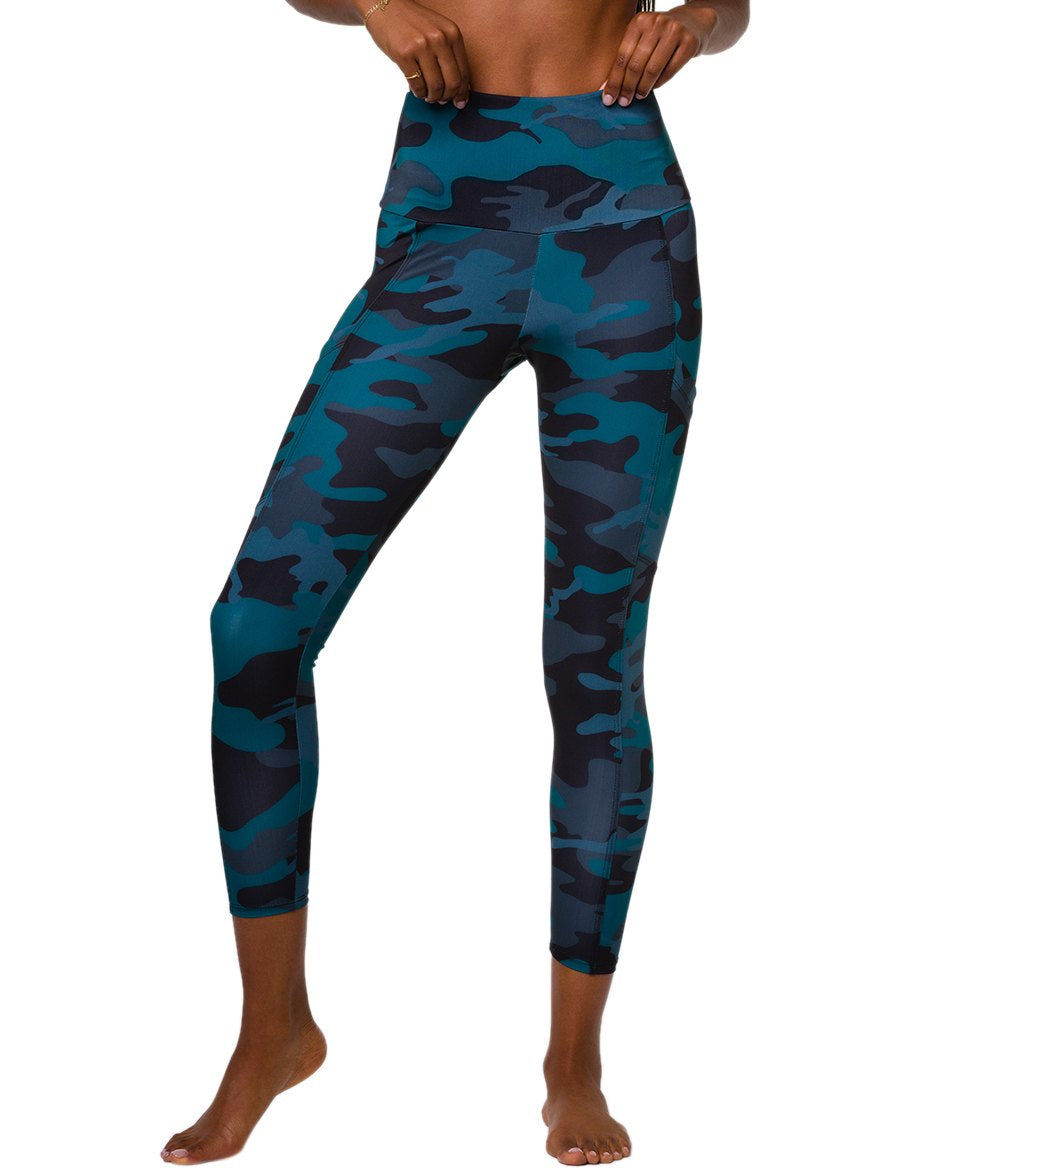 Leopard Print Leggings for Girls – Sunia Yoga